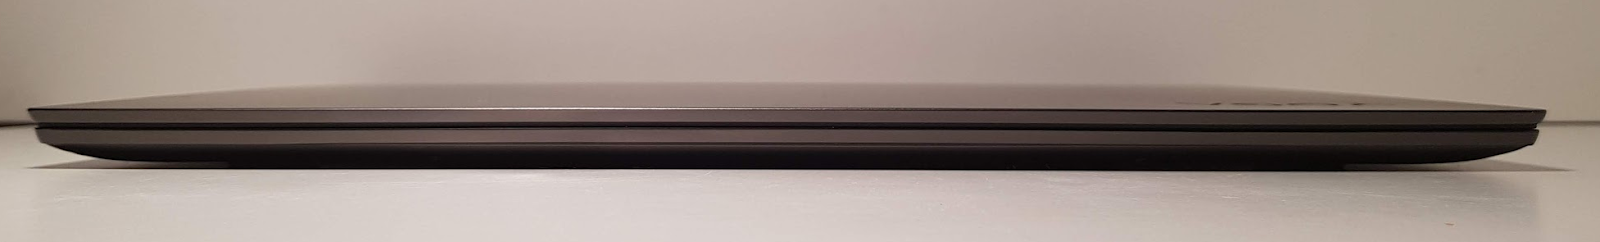 Обзор ноутбука Lenovo S730-13 (2018): мощное железо в стильном алюминиевом корпусе - 6